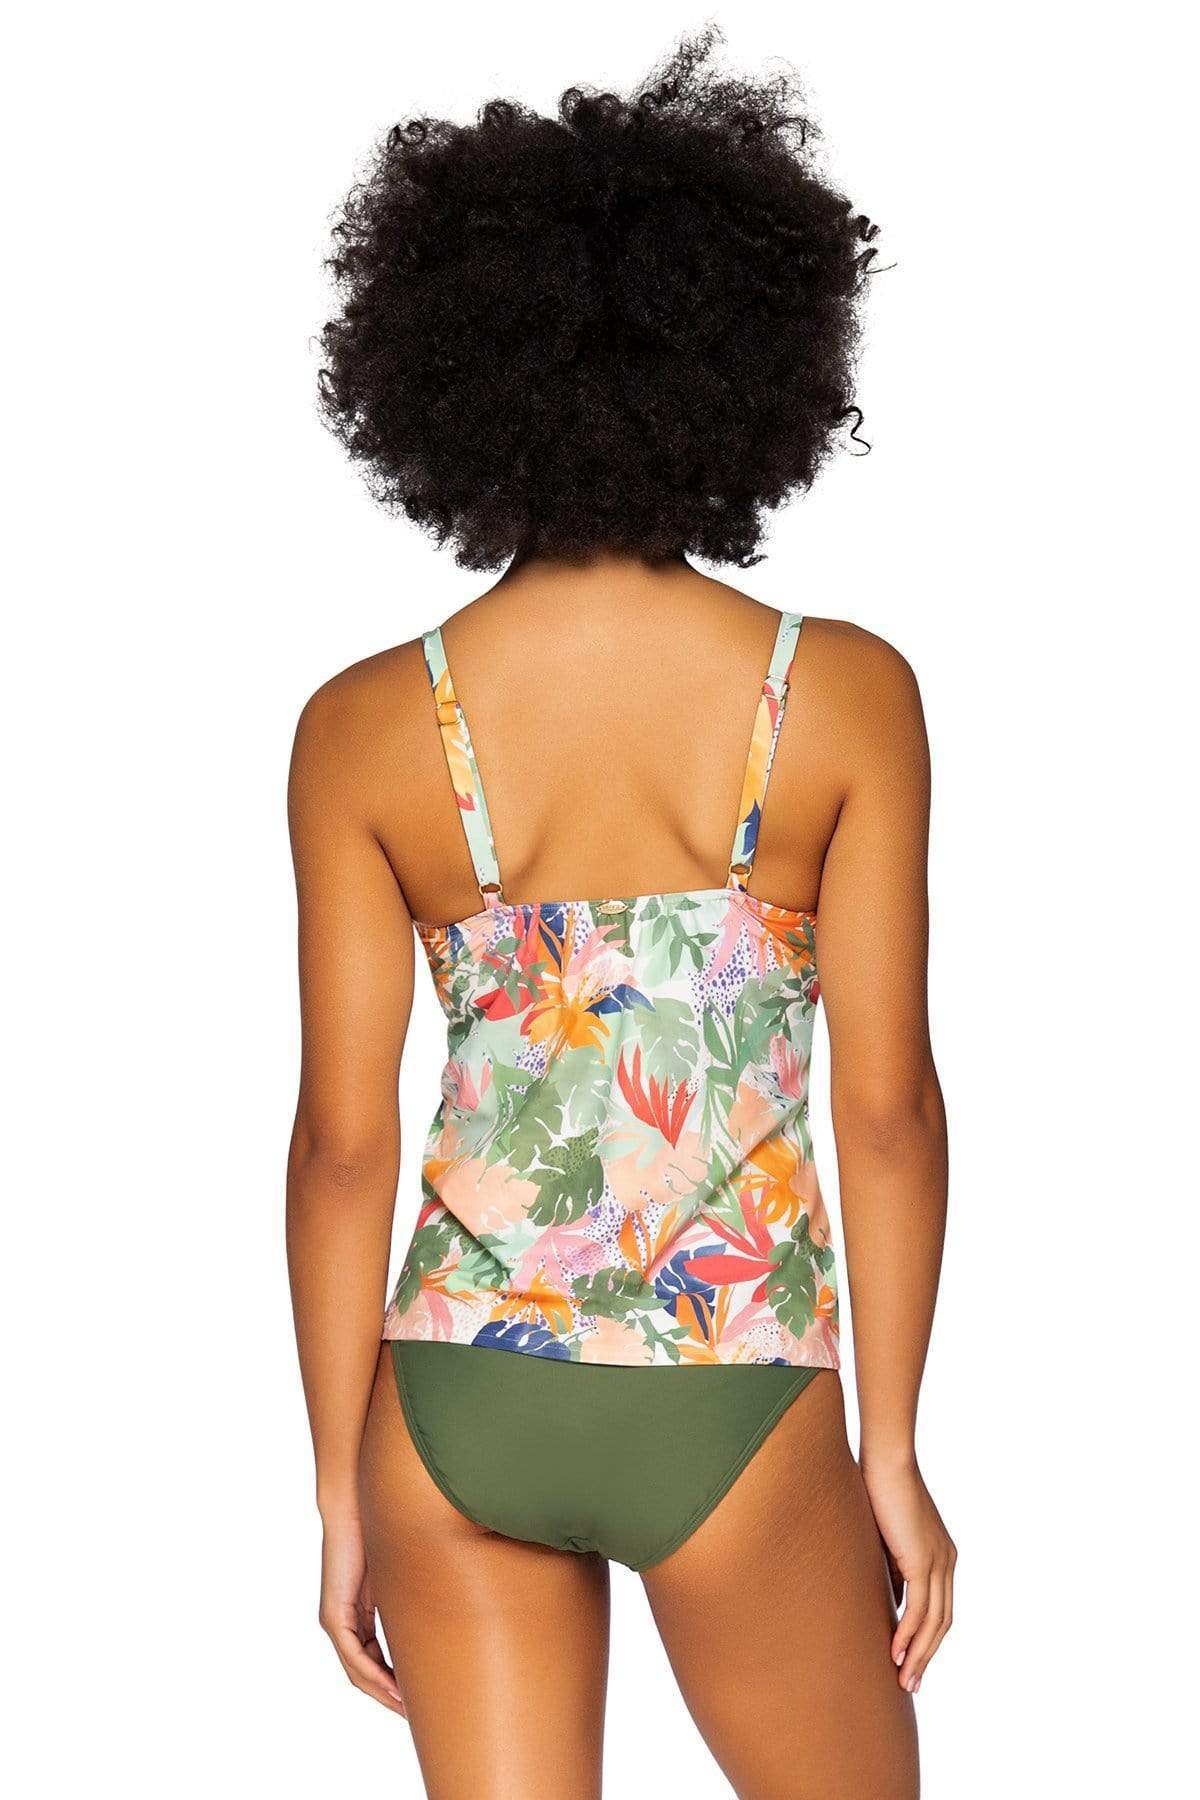 Bestswimwear -  Sunsets Serendipity Avery Tankini